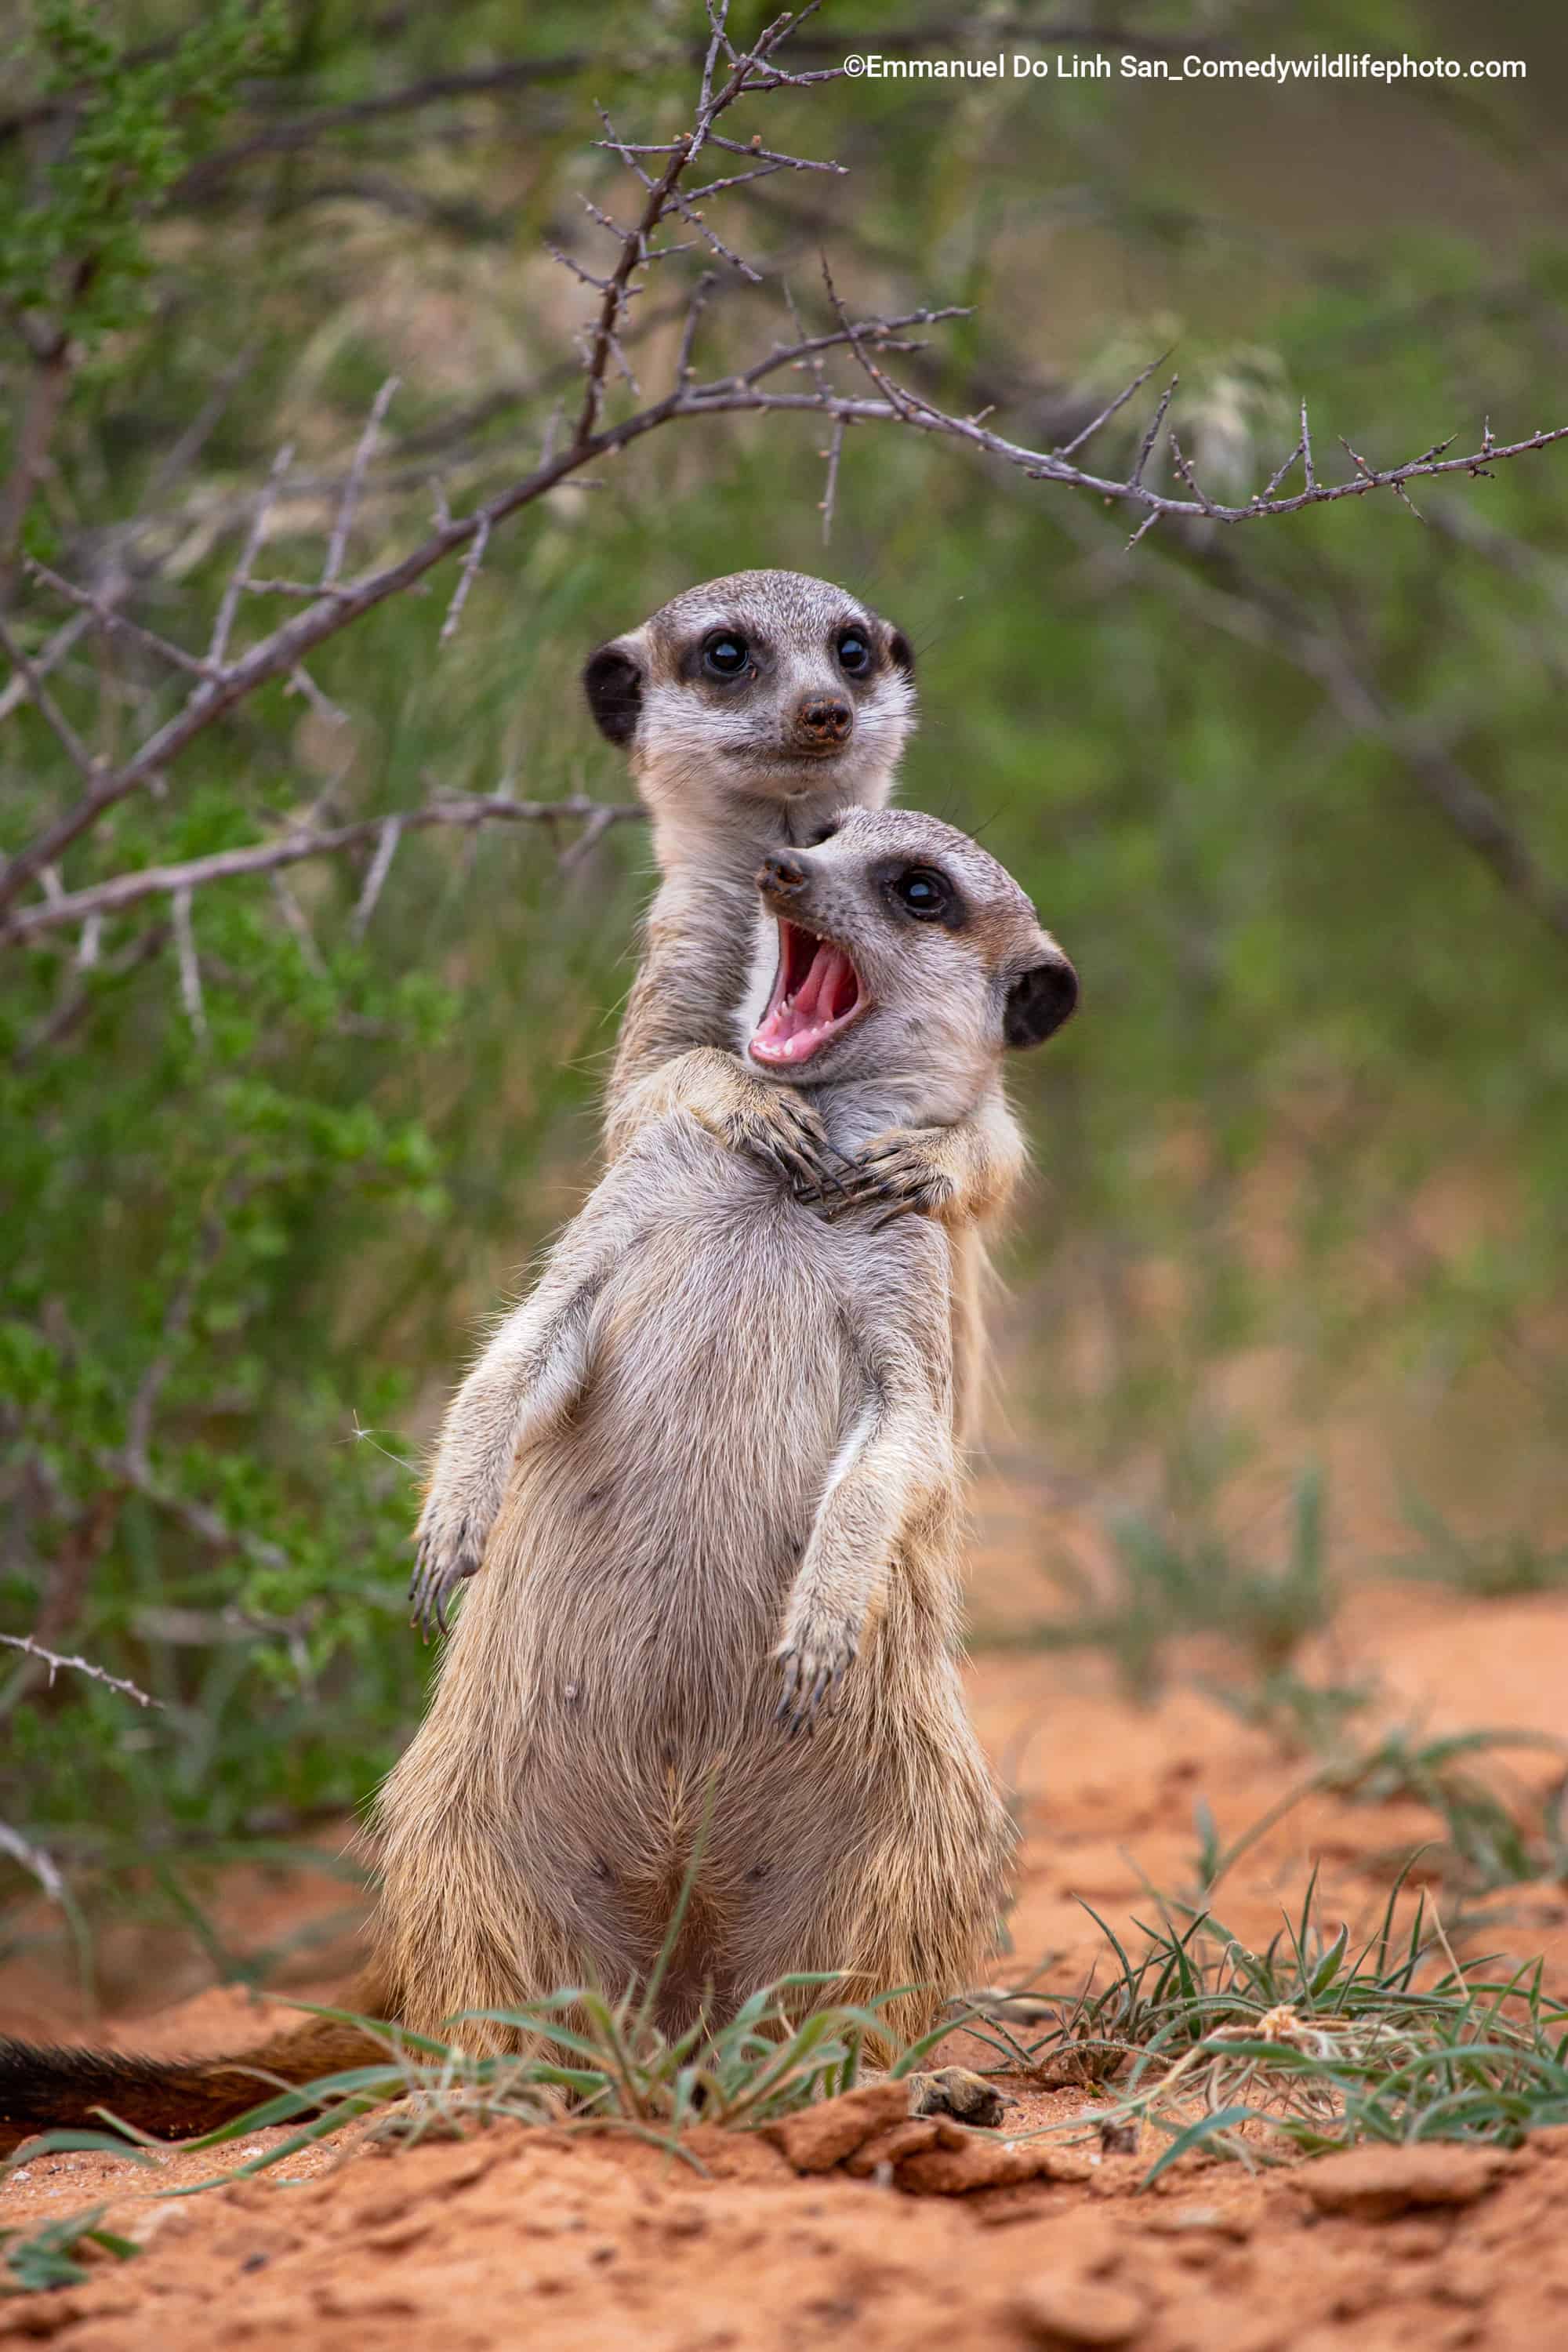 Dos suricatas en una interacción que nos recuerda a los humanos cuando uno de tus amigos bromea sobre ti y pretendes estrangularlo y, en respuesta, abren la boca como un tonto